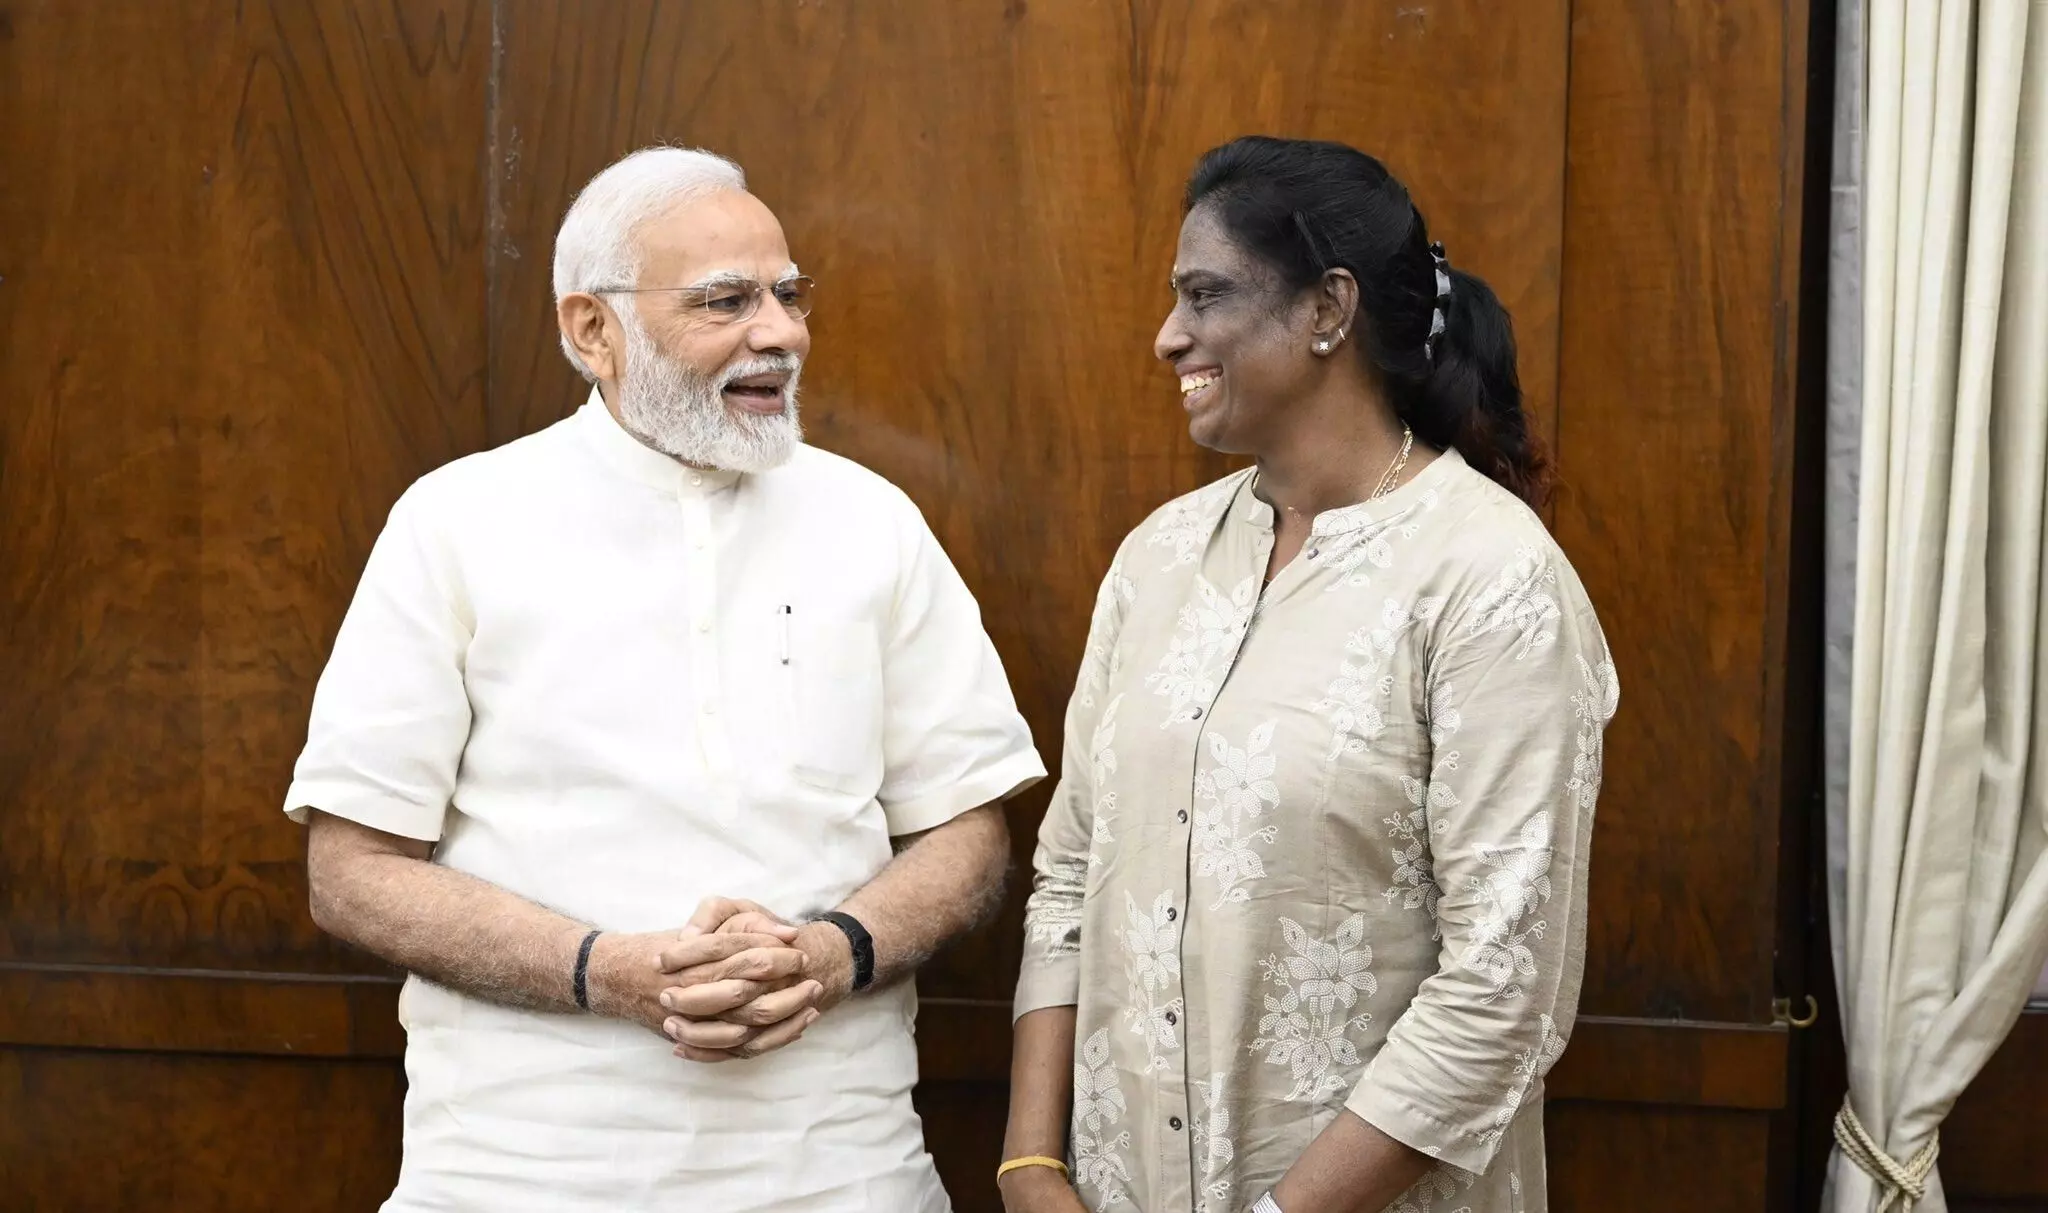 उड़नपरी की ऊंची उड़ान: राज्यसभा सांसद के बाद अब भारतीय ओलंपिक संघ की अध्यक्ष चुनी गईं पीटी उषा, पहली महिला ओलंपियन जिन्हें यह जिम्मेदारी